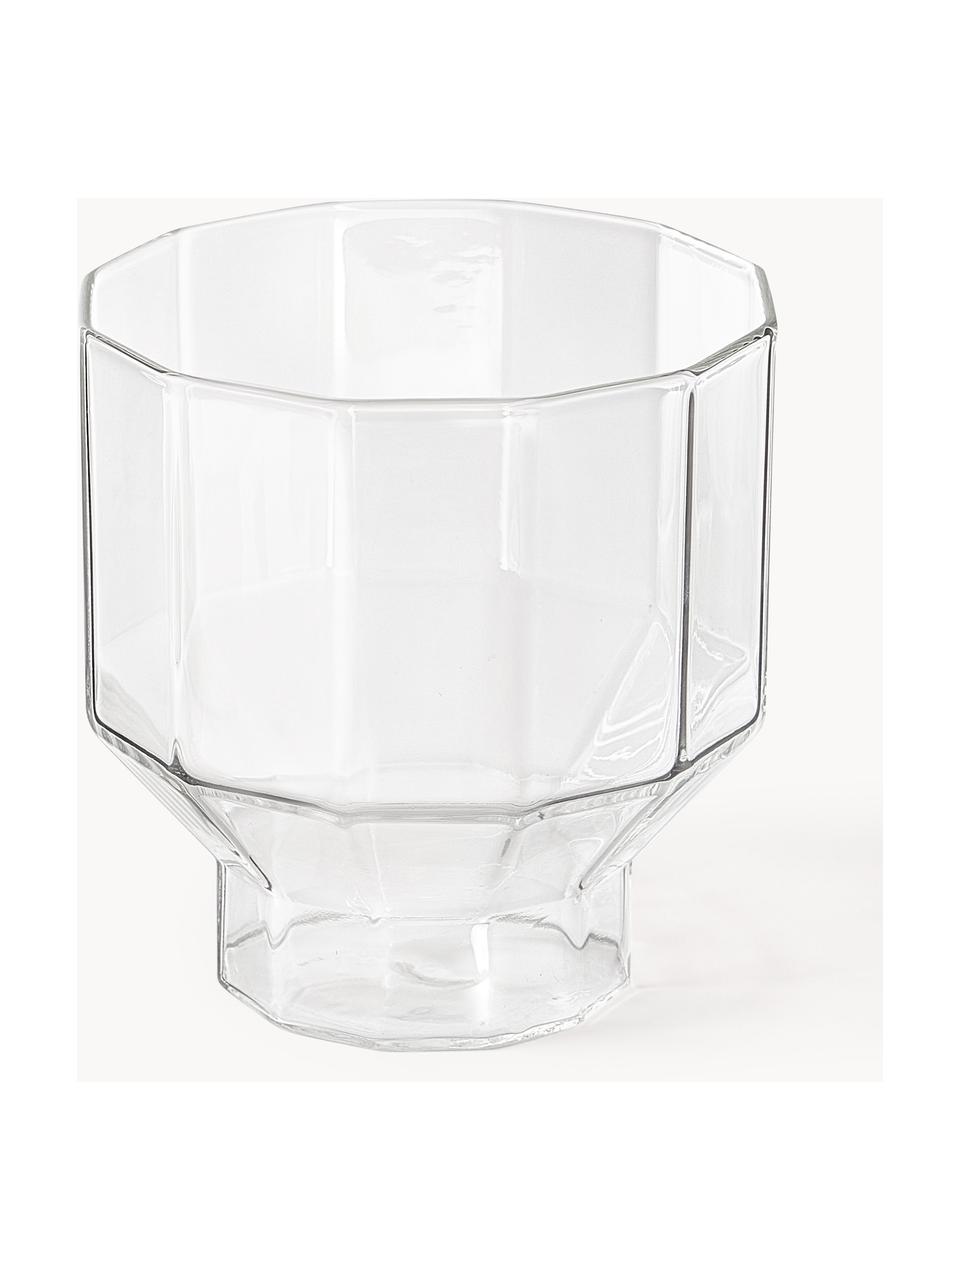 Handgeblazen waterkaraf met Angoli glazen, set van 5, Borosilicaatglas, Transparant, Set met verschillende groottes